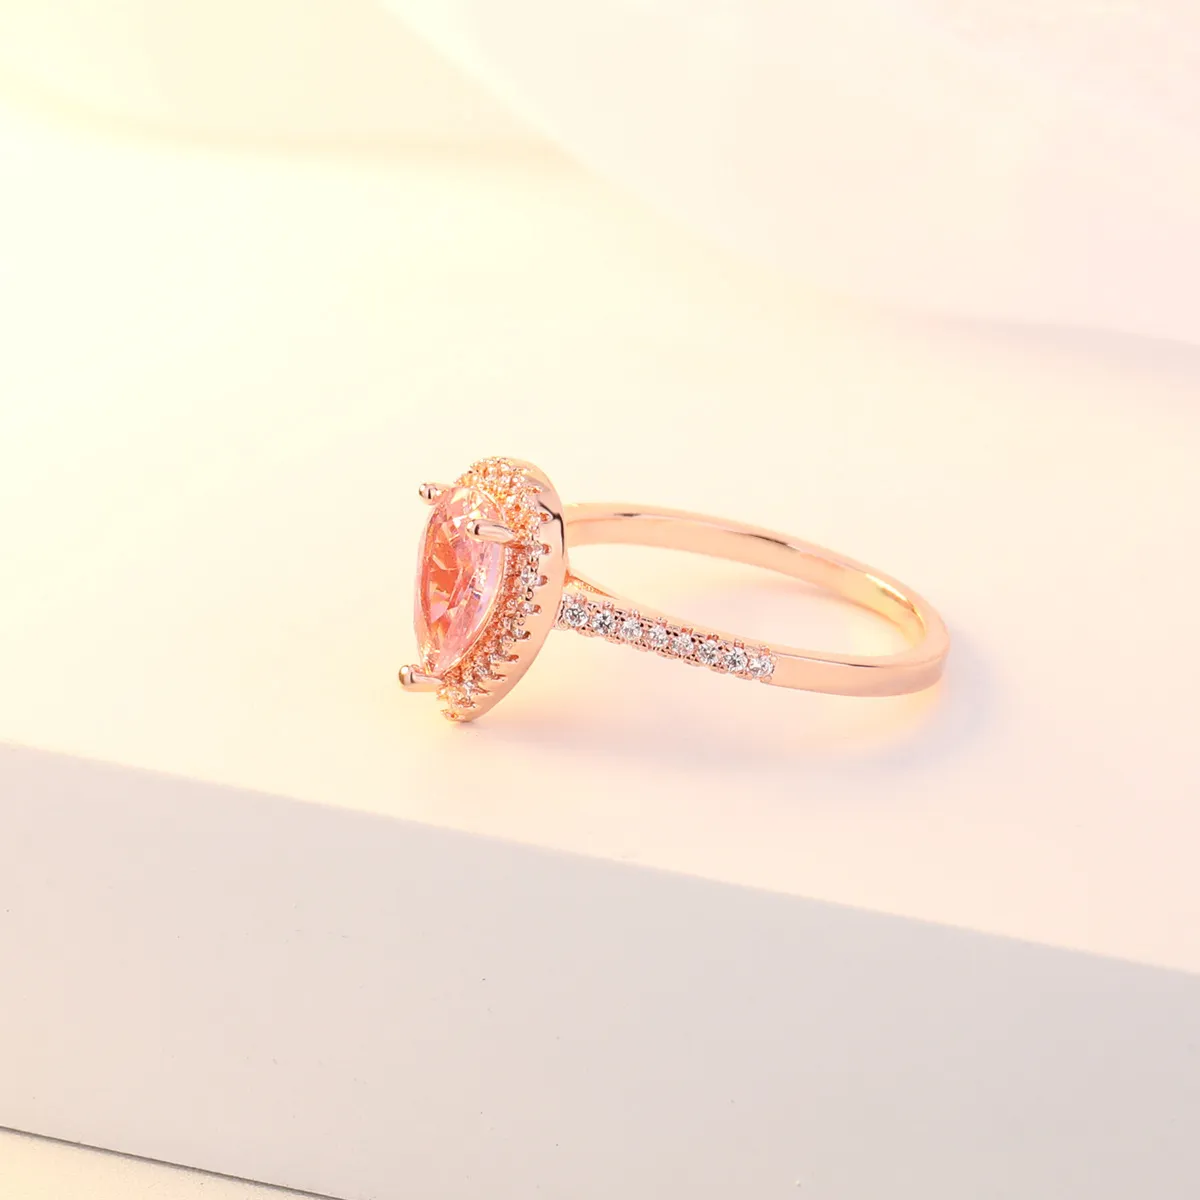 OMHXZJ Цельноевропейское модное кольцо для женщин и девочек, свадебный подарок, капля воды, розовый, белый циркон, кольцо из розового золота 18 карат, RR5983400836